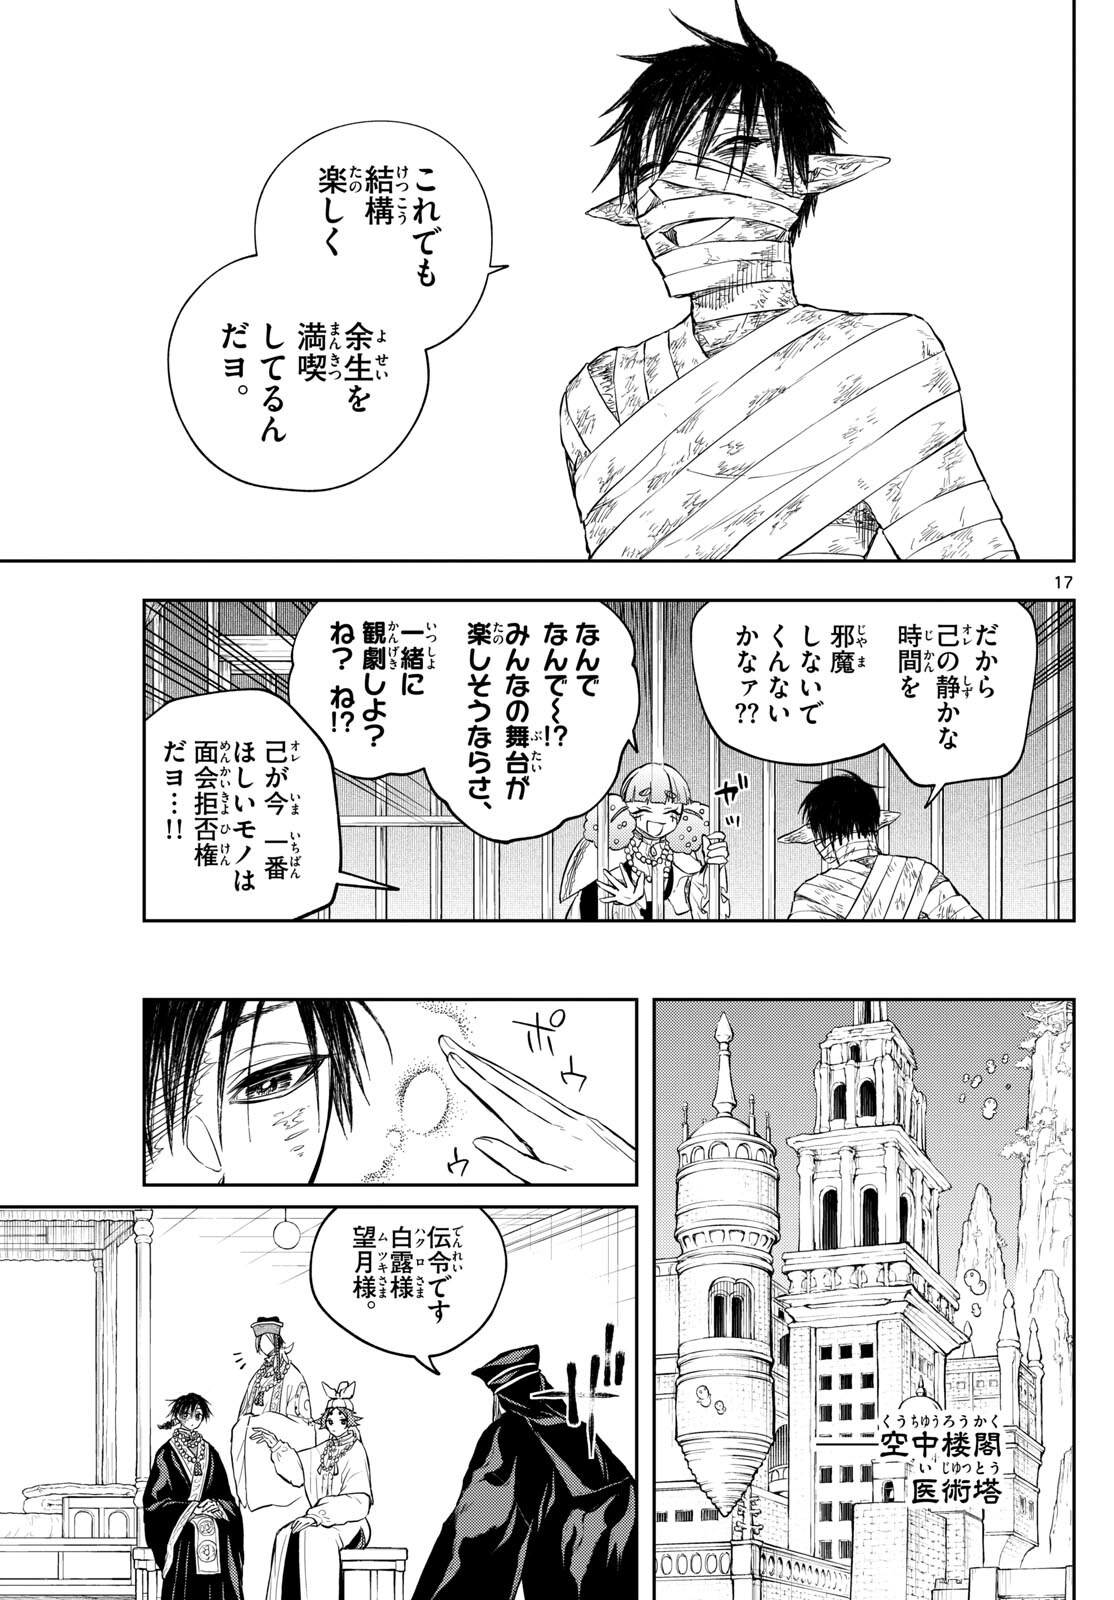 Akatsuki Jihen - Chapter 42 - Page 17